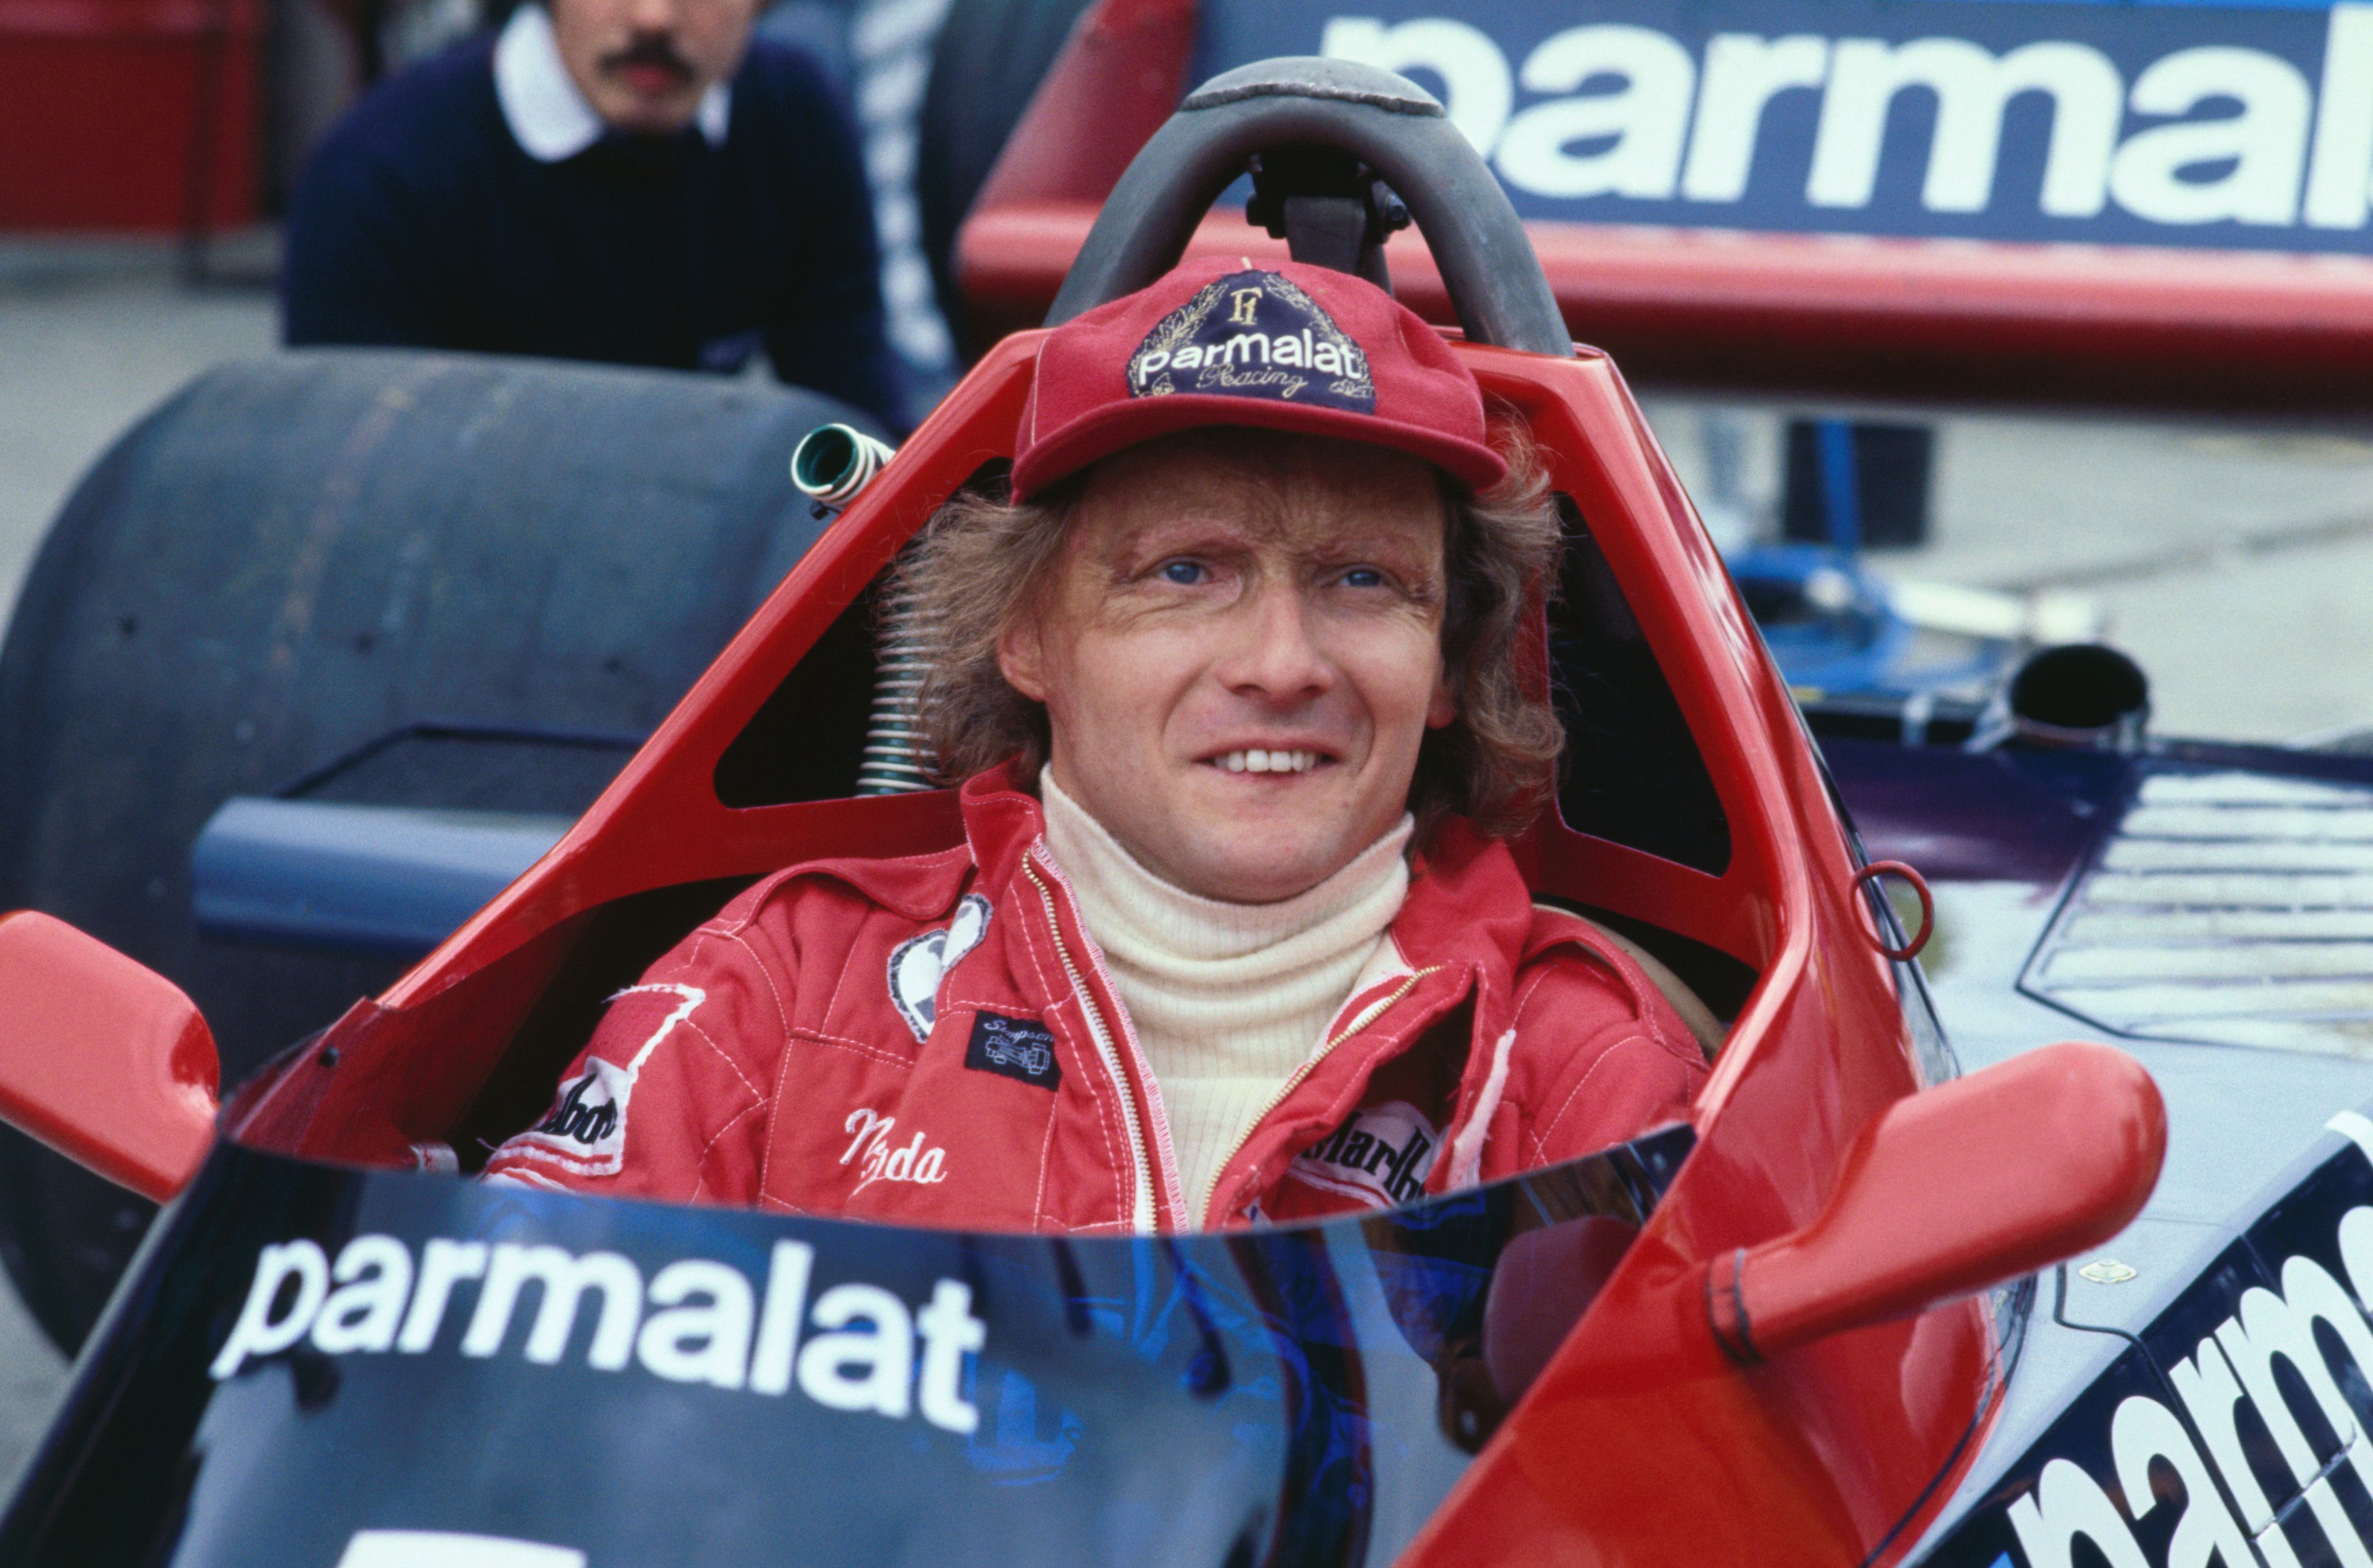 46 éve majdnem a kocsijában égett, de pár hét múlva már újra versenyzett, három éve hunyt el Niki Lauda / Fotó: Getty Images